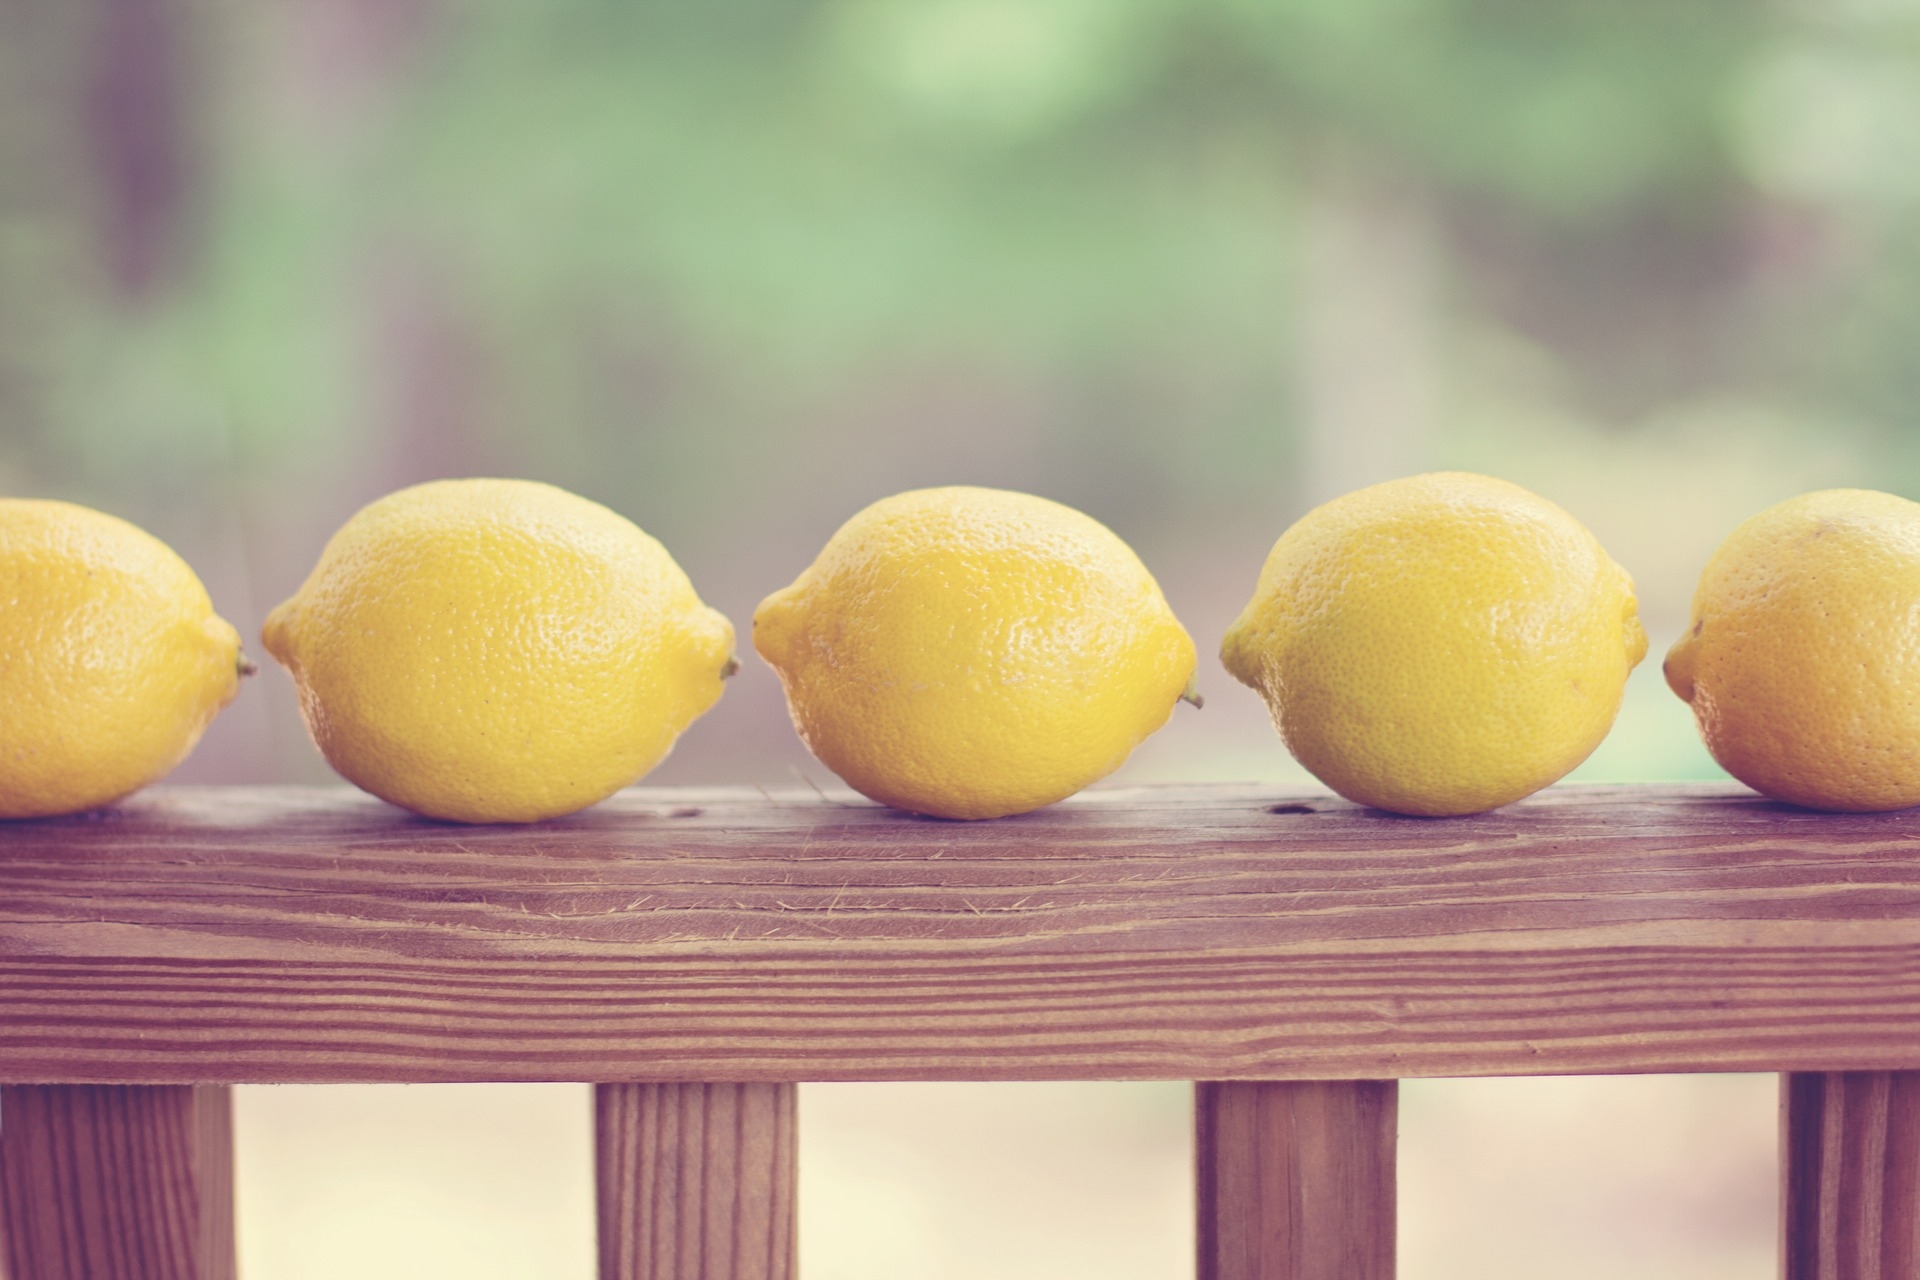 household-uses-lemons-20160928004033